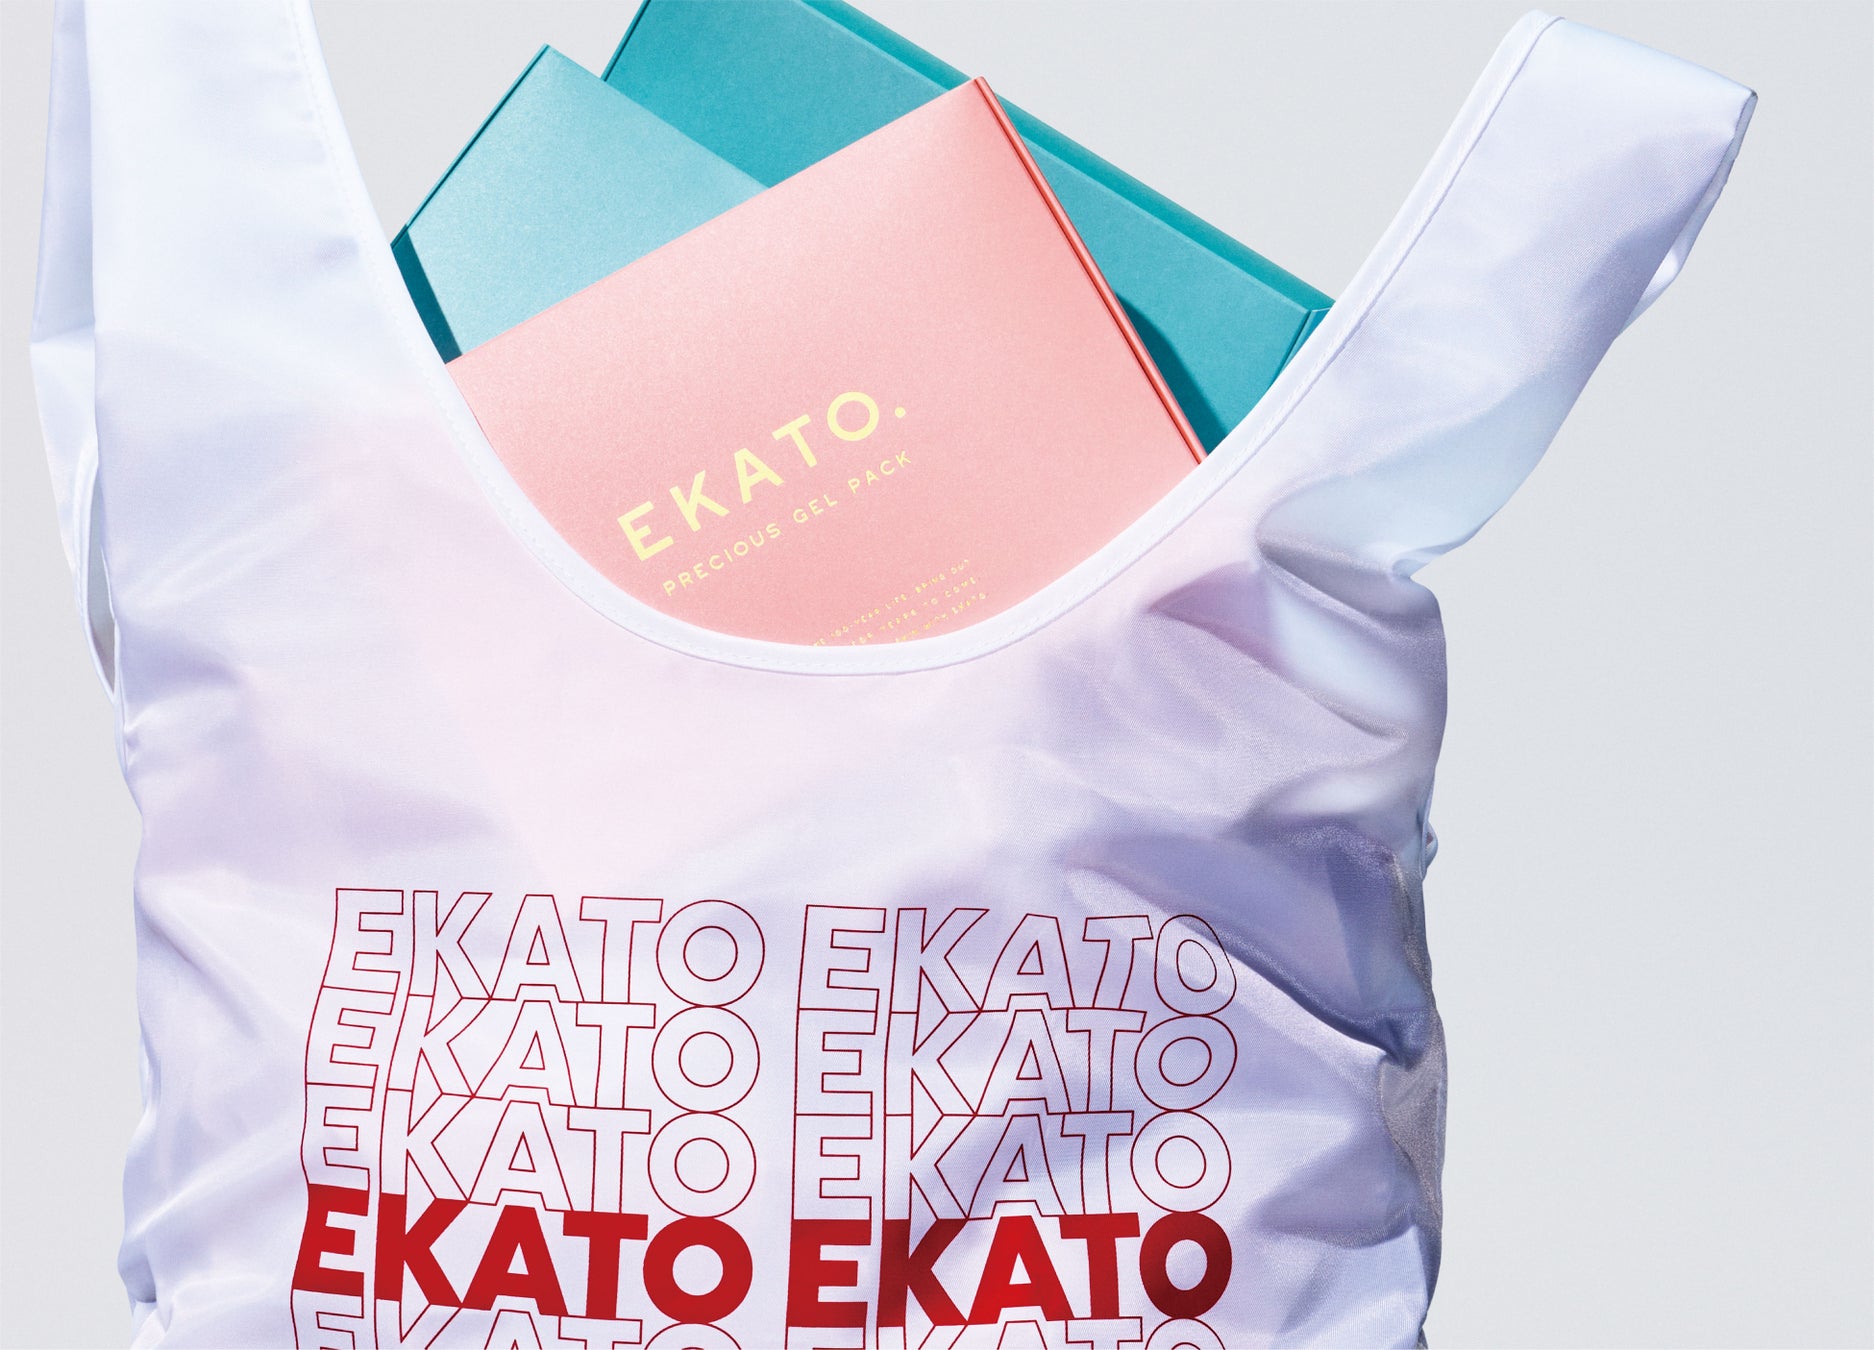 プロ級のケアを自宅で叶えるセルフケアブランド、EKATO（エカト）が1年ぶりのポップアップストアを7月24日から伊勢丹新宿店にて開催